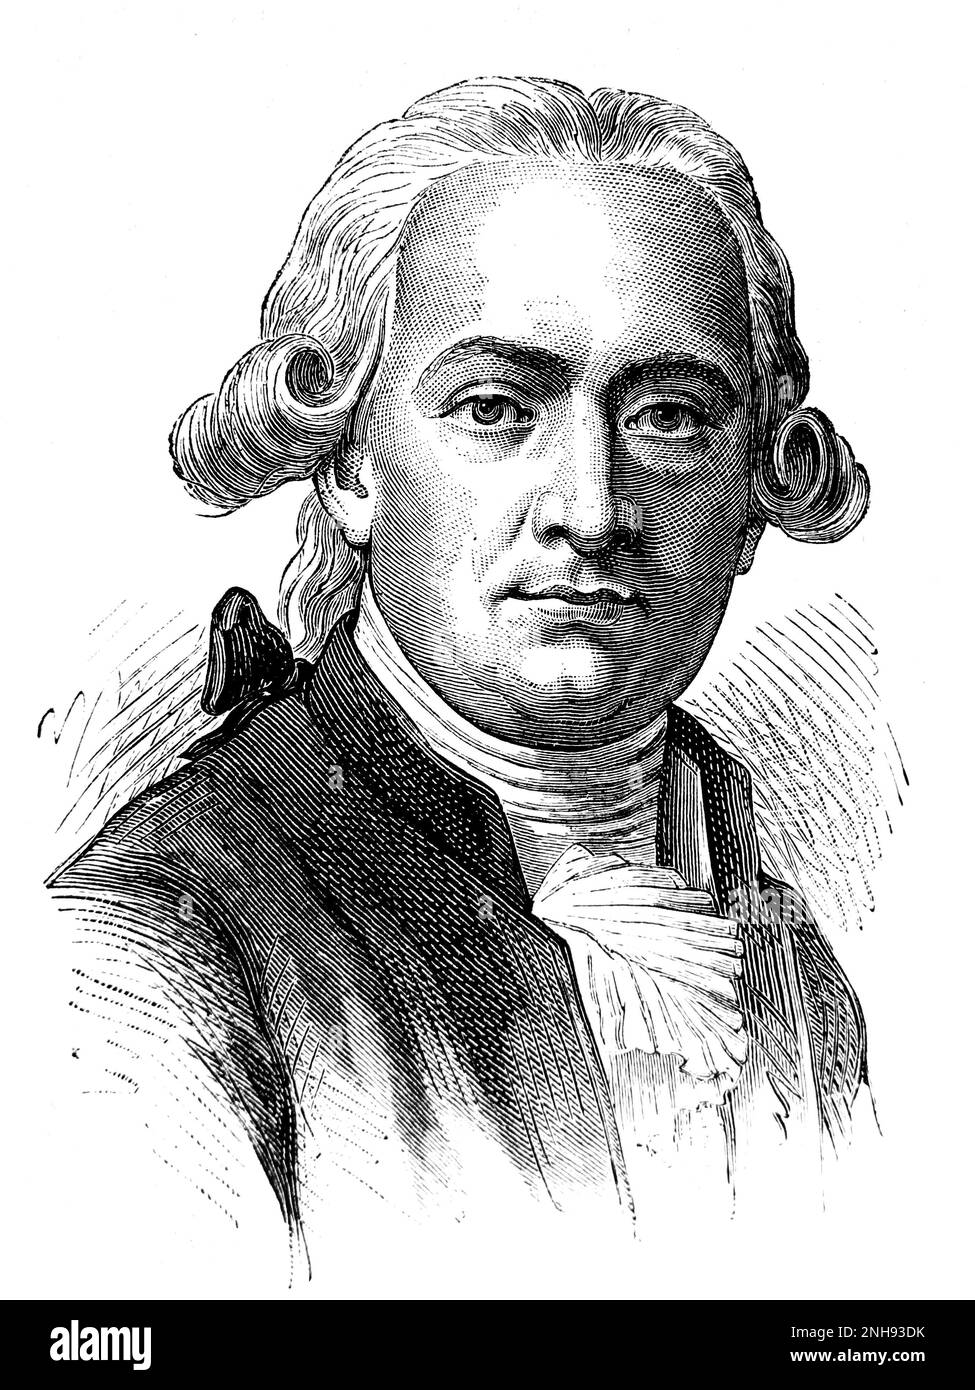 Valentin Hauy (1745-1822) gründete 1785 in Paris die erste Blindenschule, die Louis Braille 1819 besuchte. Andere Blindenschulen folgten seinem Modell. Illustration, H. Rousseau und E.Thomas, 1889. Stockfoto